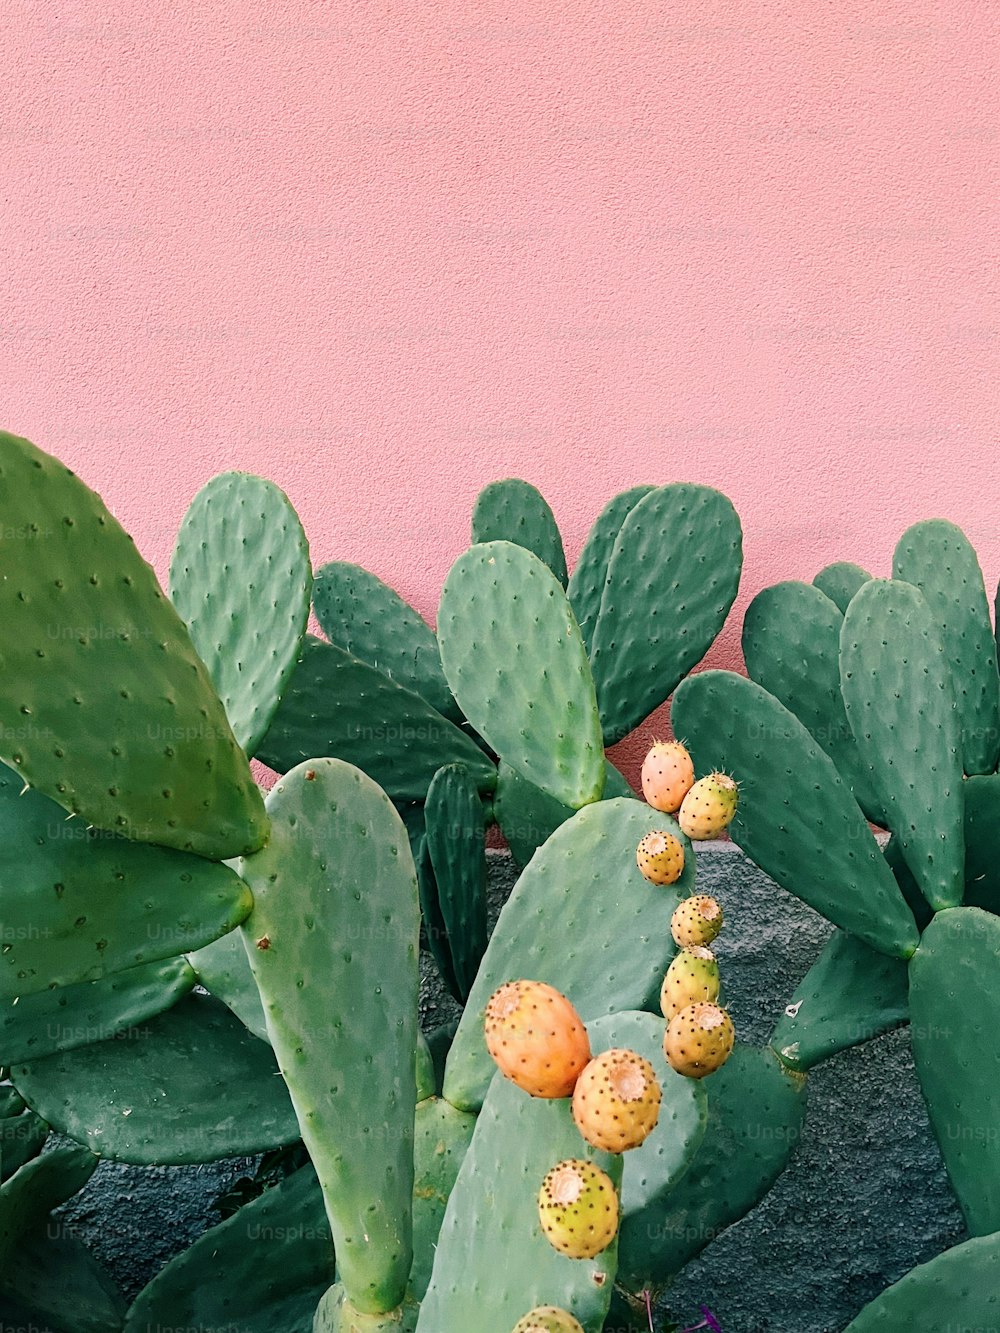 Eine Gruppe von Kakteenpflanzen neben einer rosa Wand